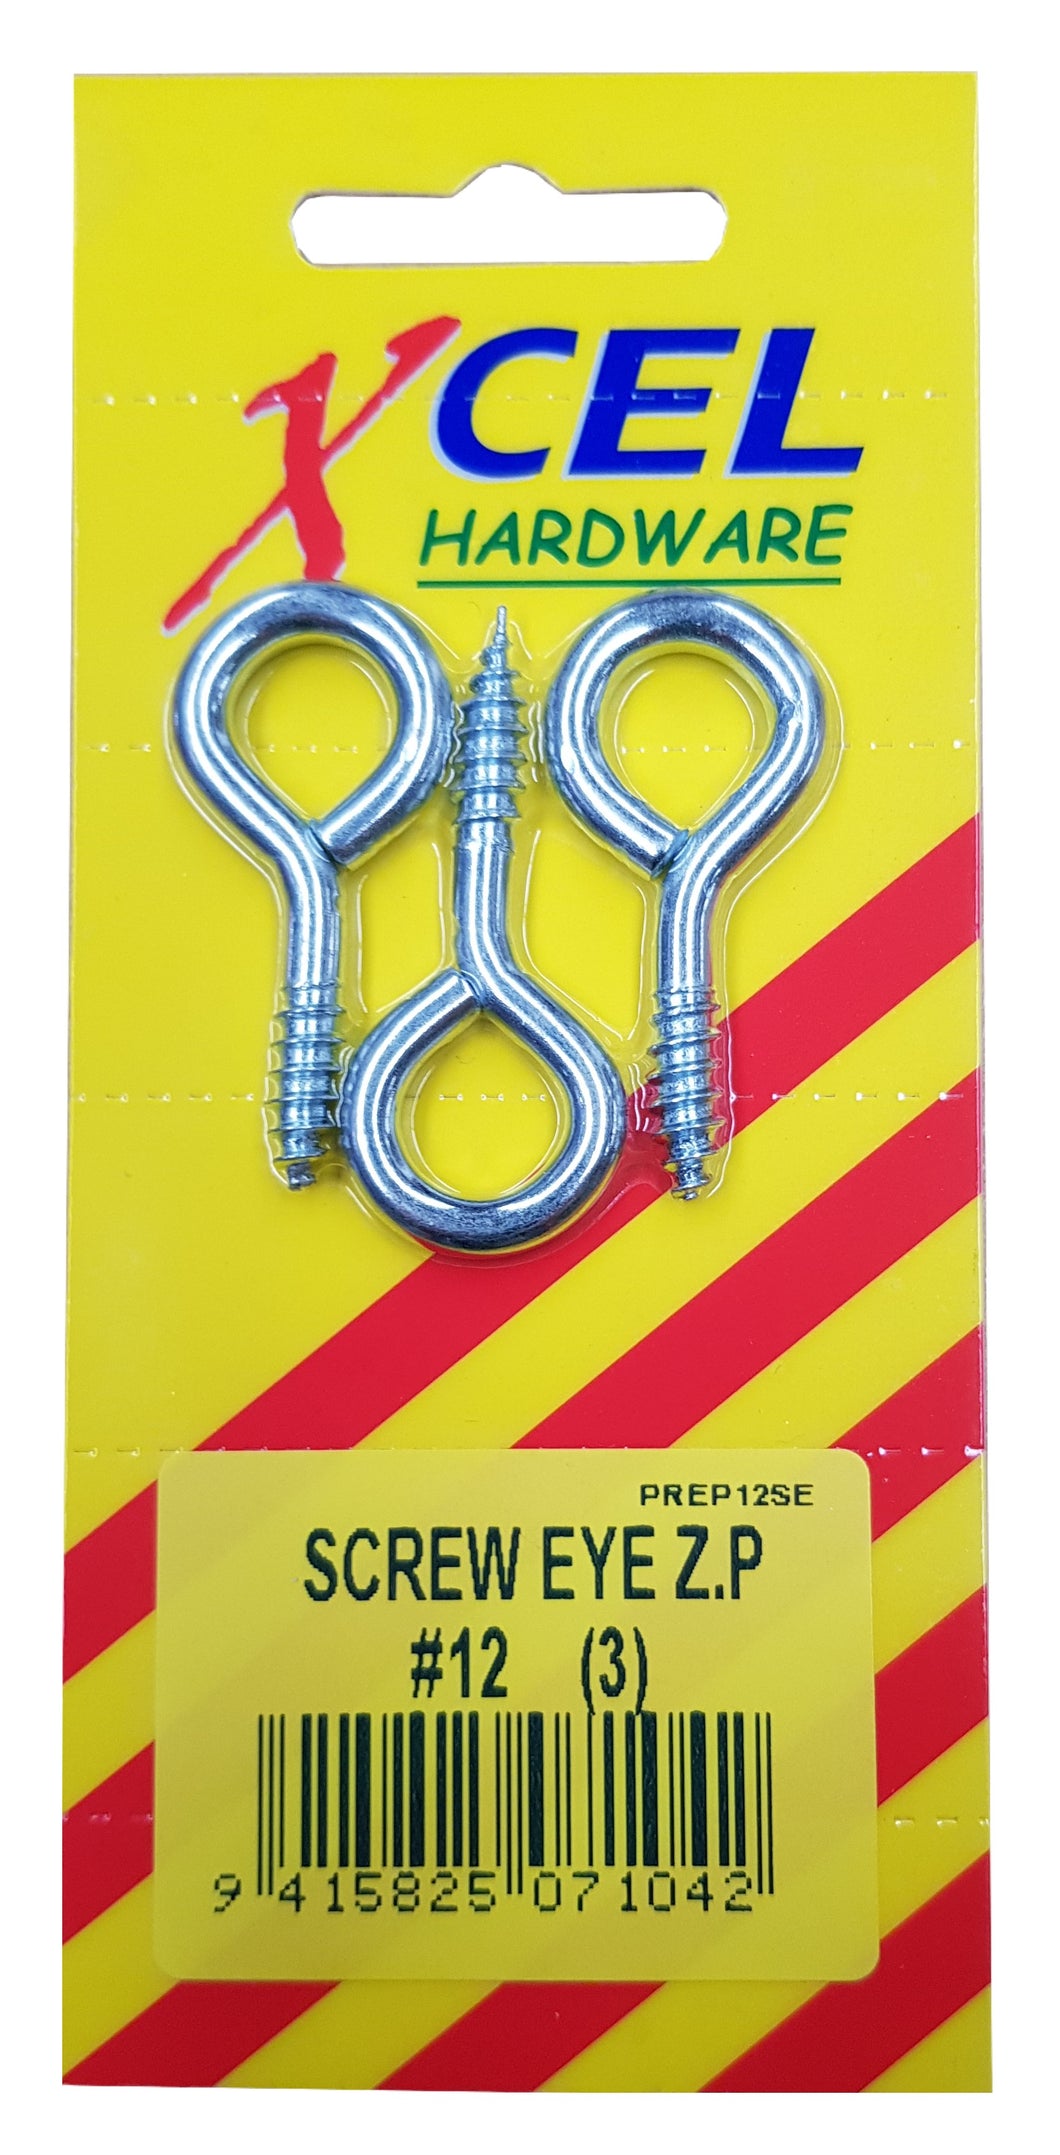 Screw Eyes ZP #12 3-pce 45mm x 4.2mm Carded Xcel